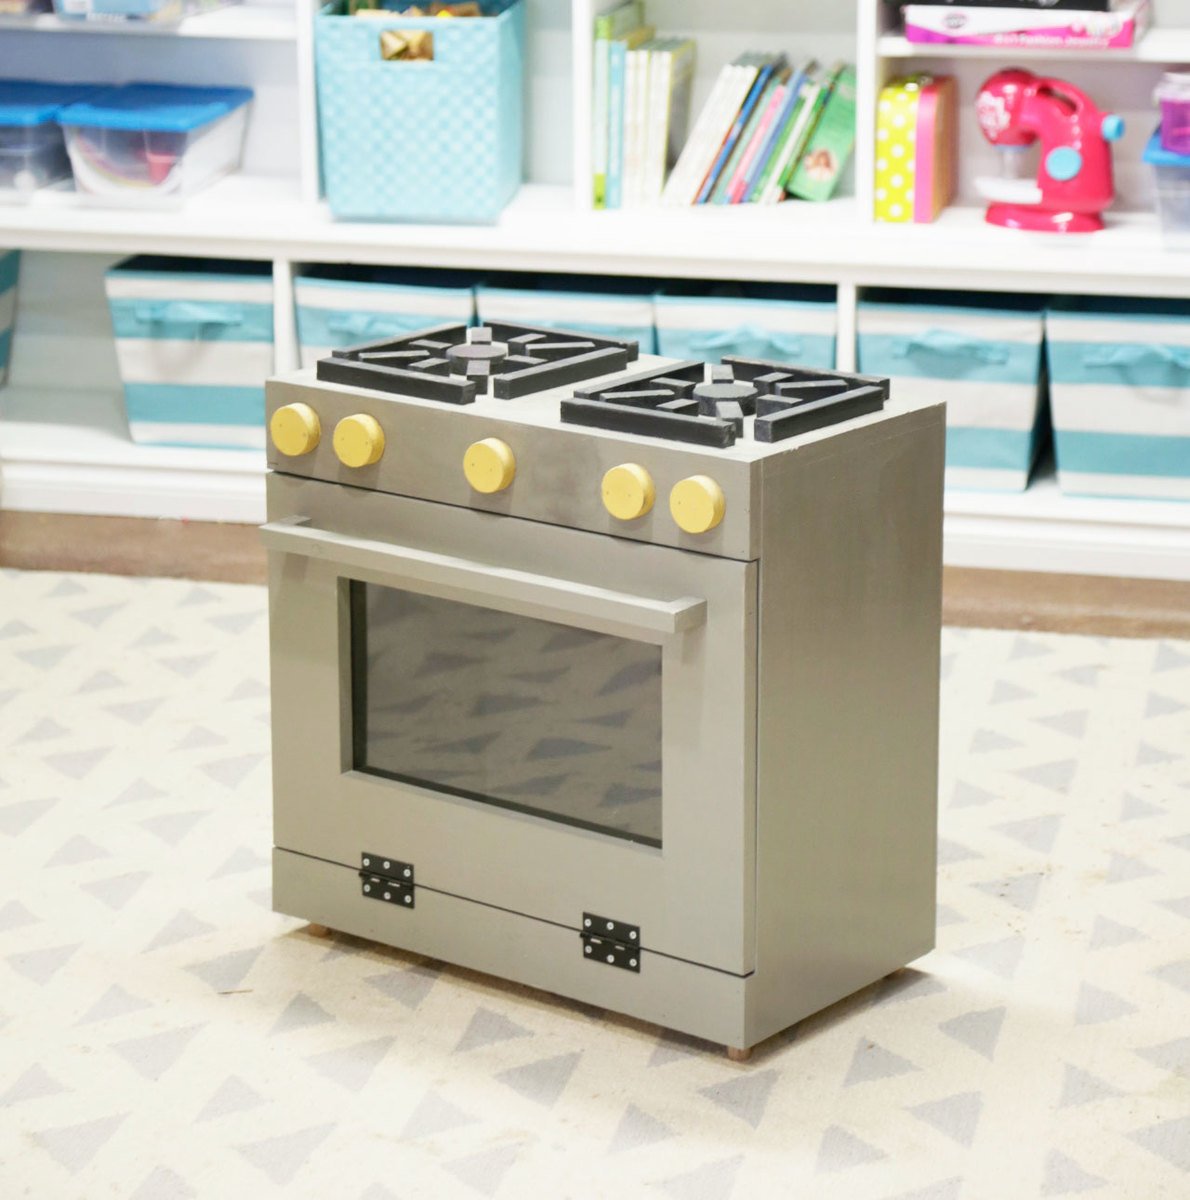 free kitchen stove toy plans